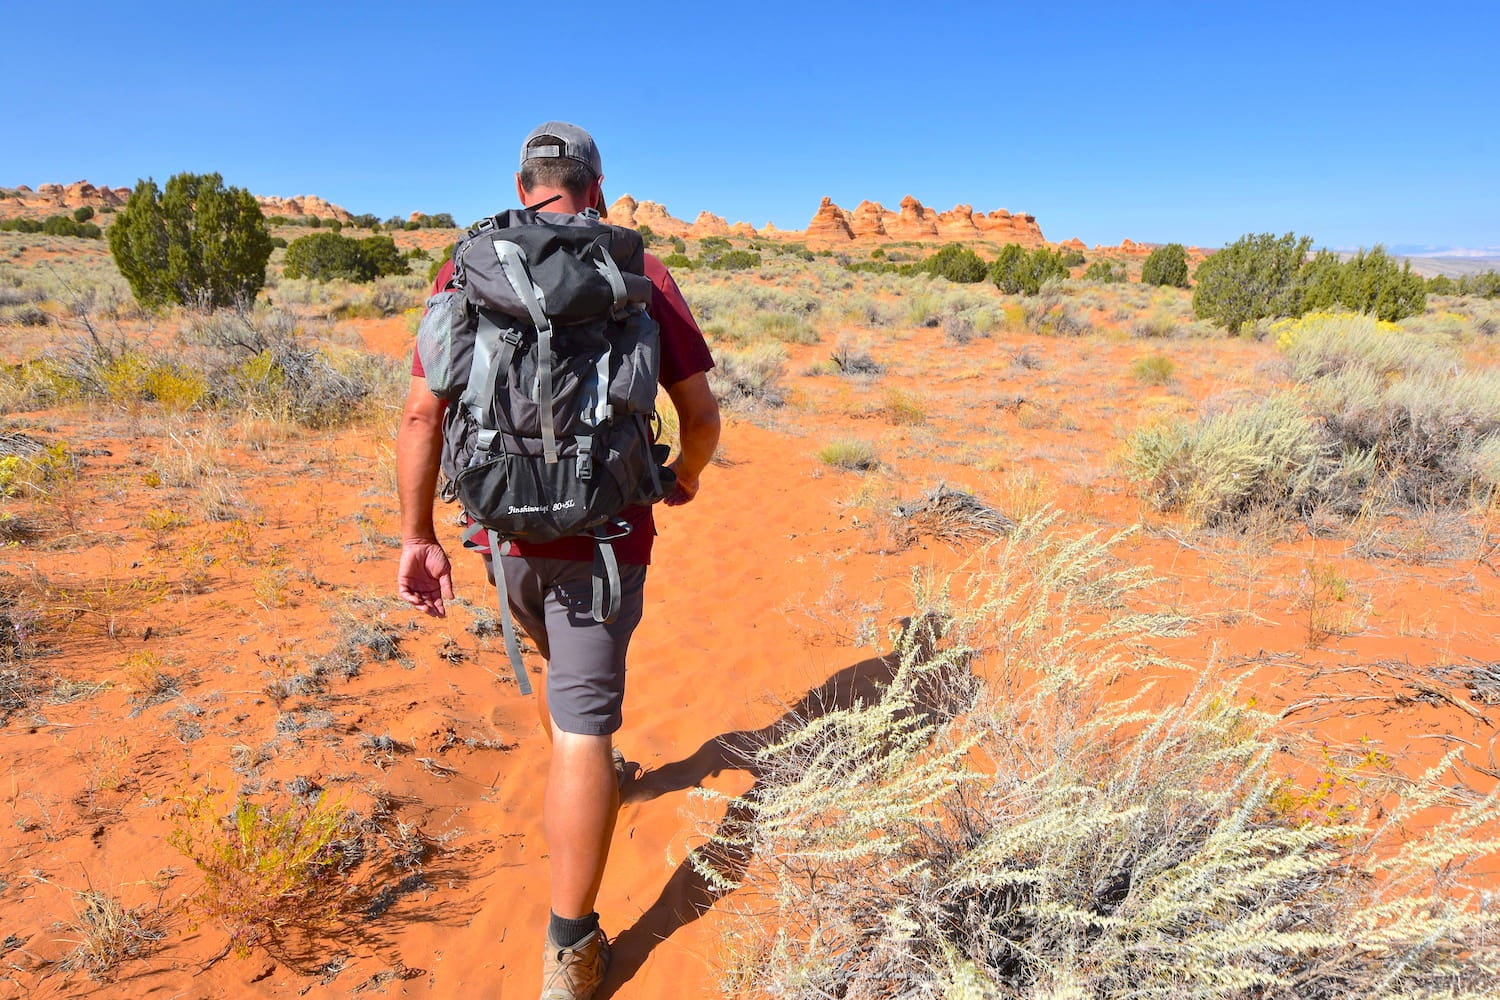 Bakcpacker hiking through red rock desert.